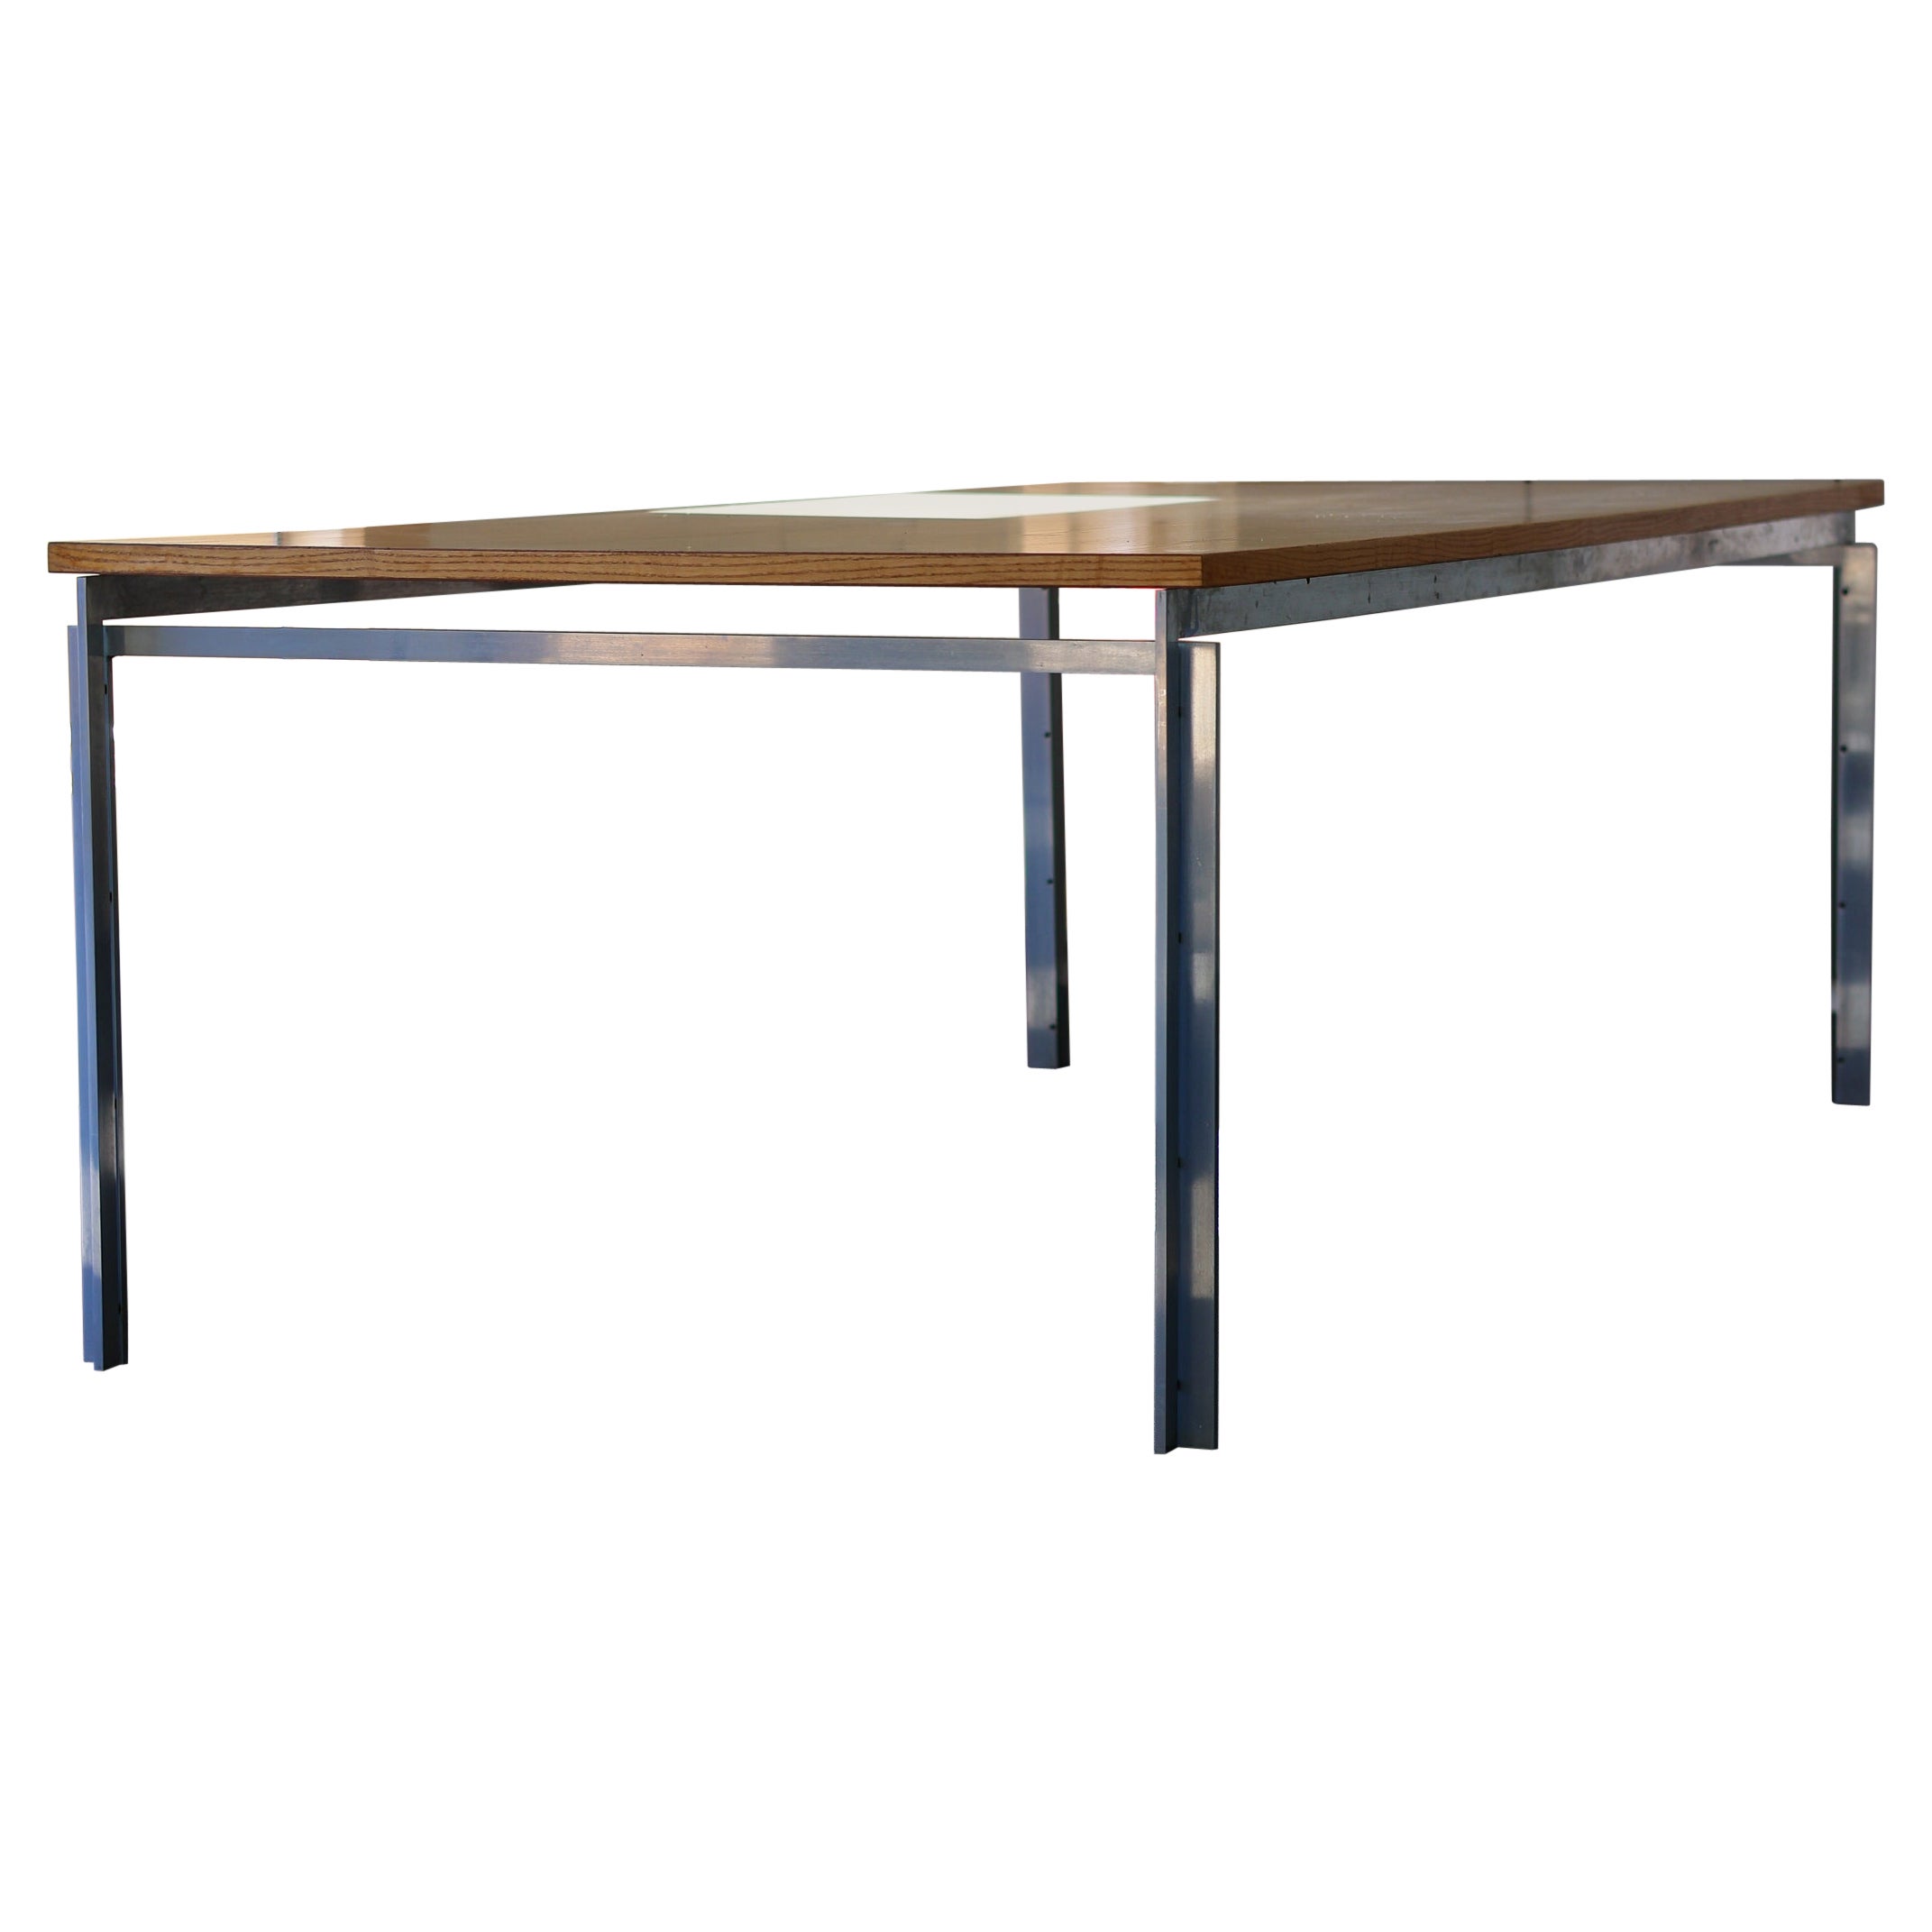 Large Poul Kjaerholm PK55 Table by Ejvindt Kold Christensen For Sale